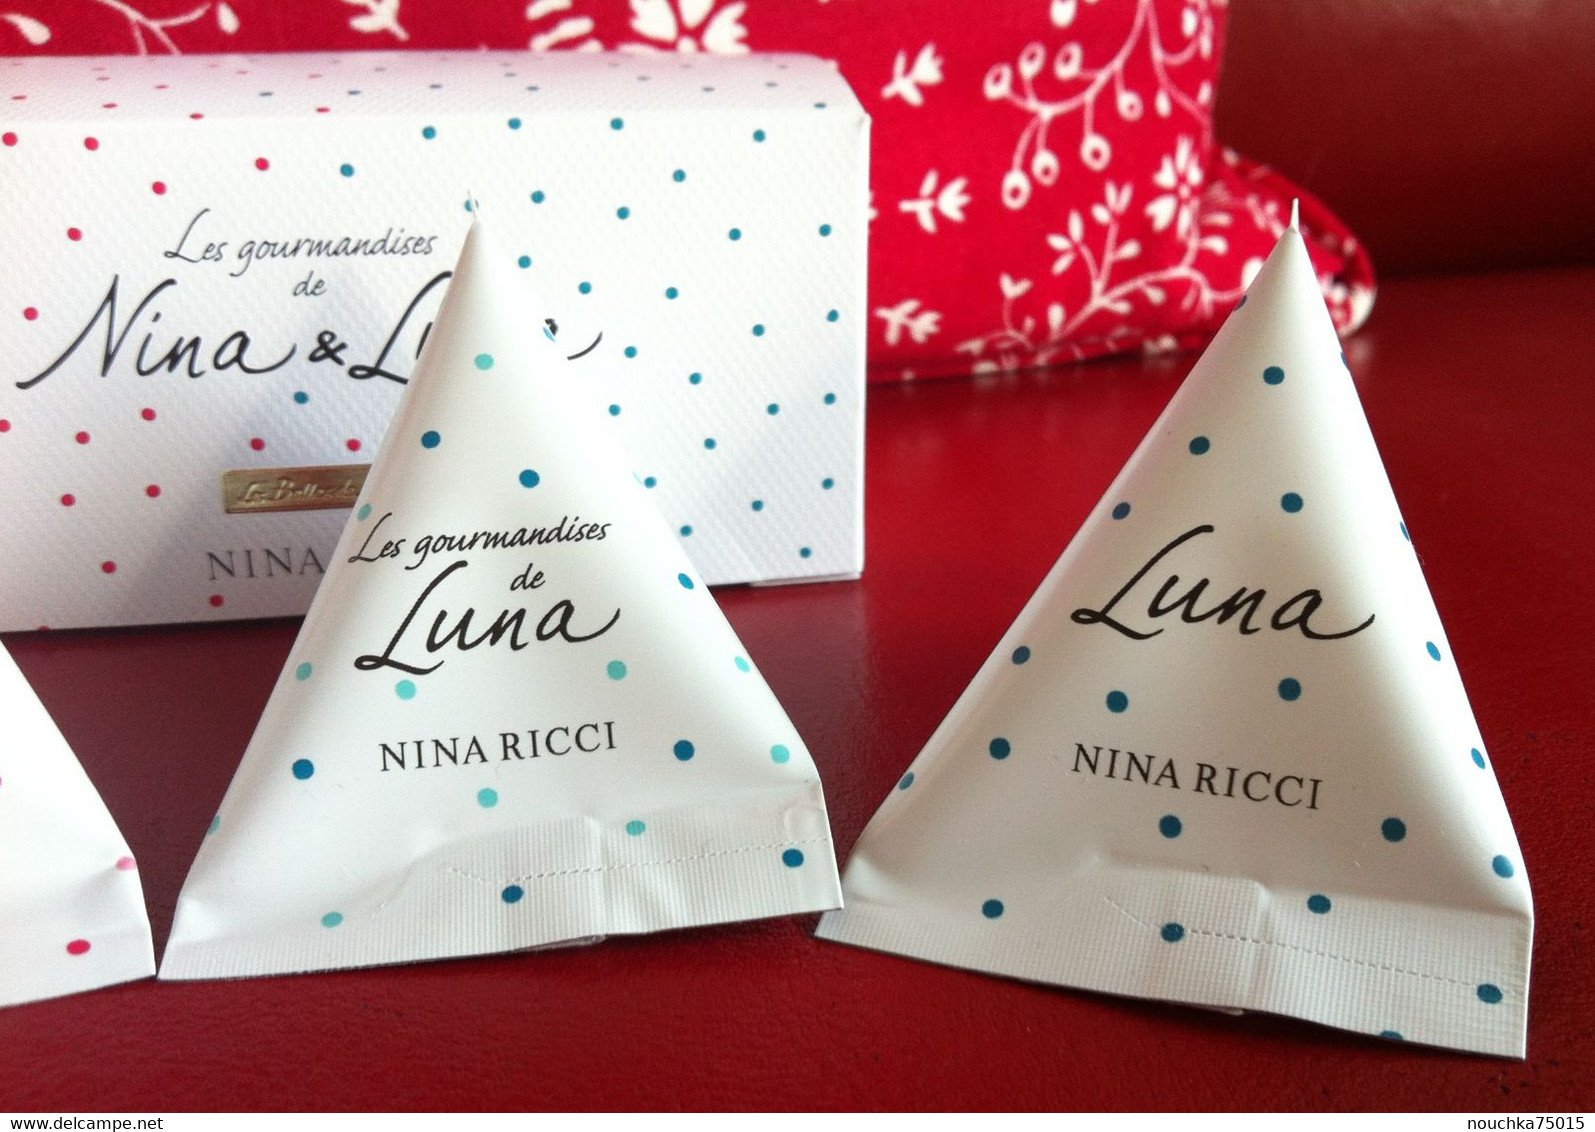 Nina Ricci - Les Gourmandises De Nina Et Luna - Produits De Beauté